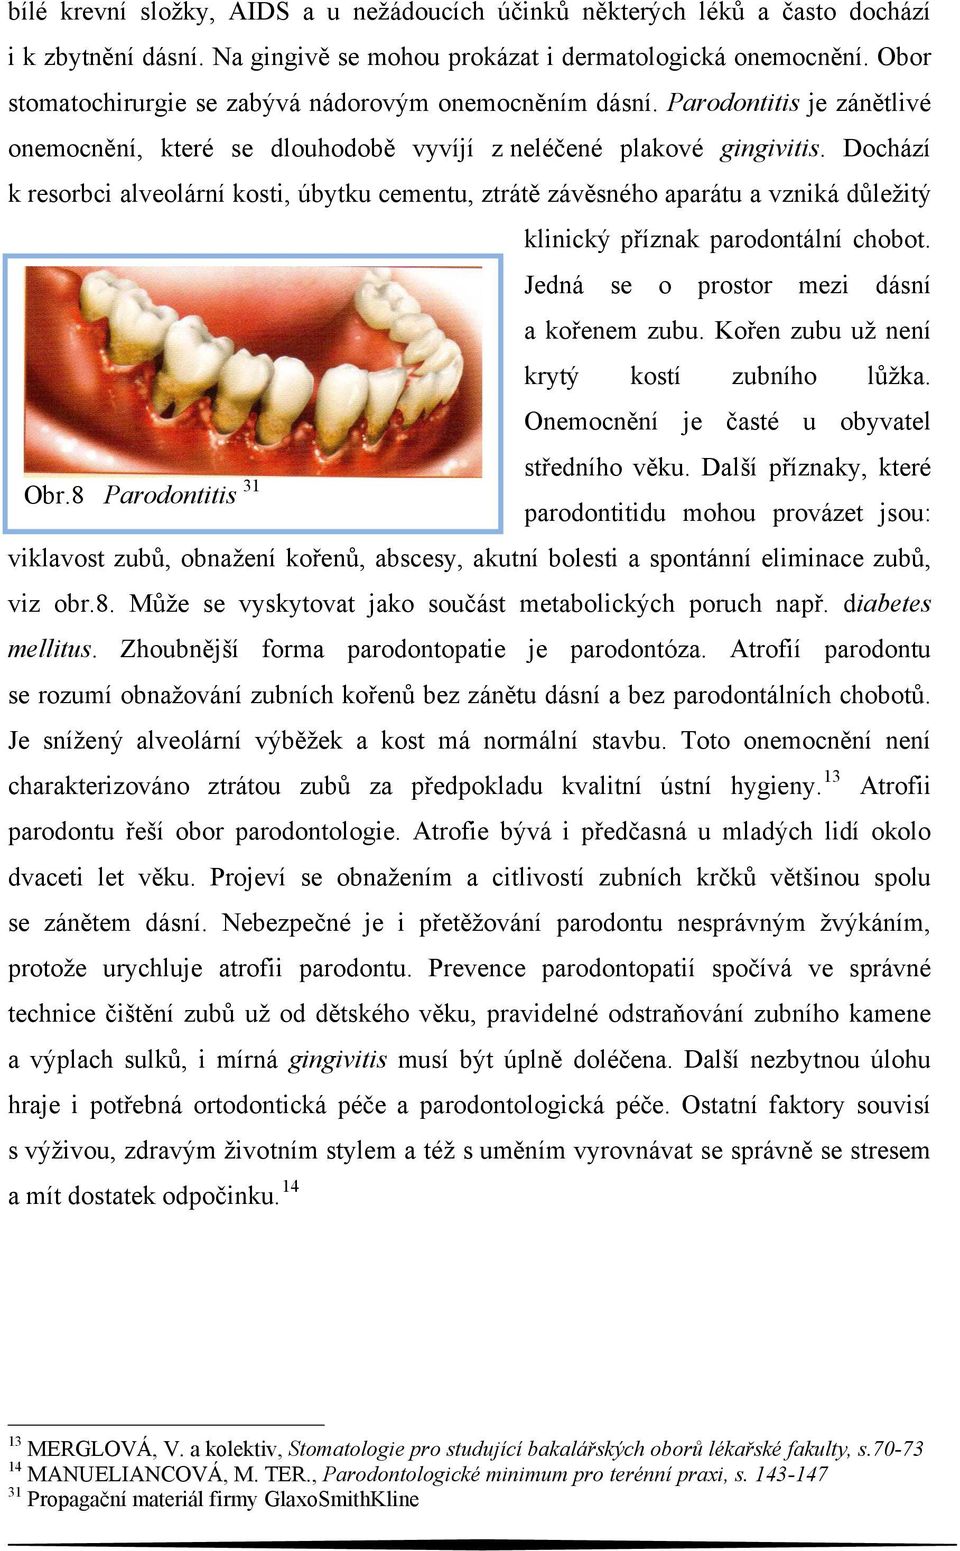 Dochází k resorbci alveolární kosti, úbytku cementu, ztrátě závěsného aparátu a vzniká důležitý klinický příznak parodontální chobot. Jedná se o prostor mezi dásní a kořenem zubu.